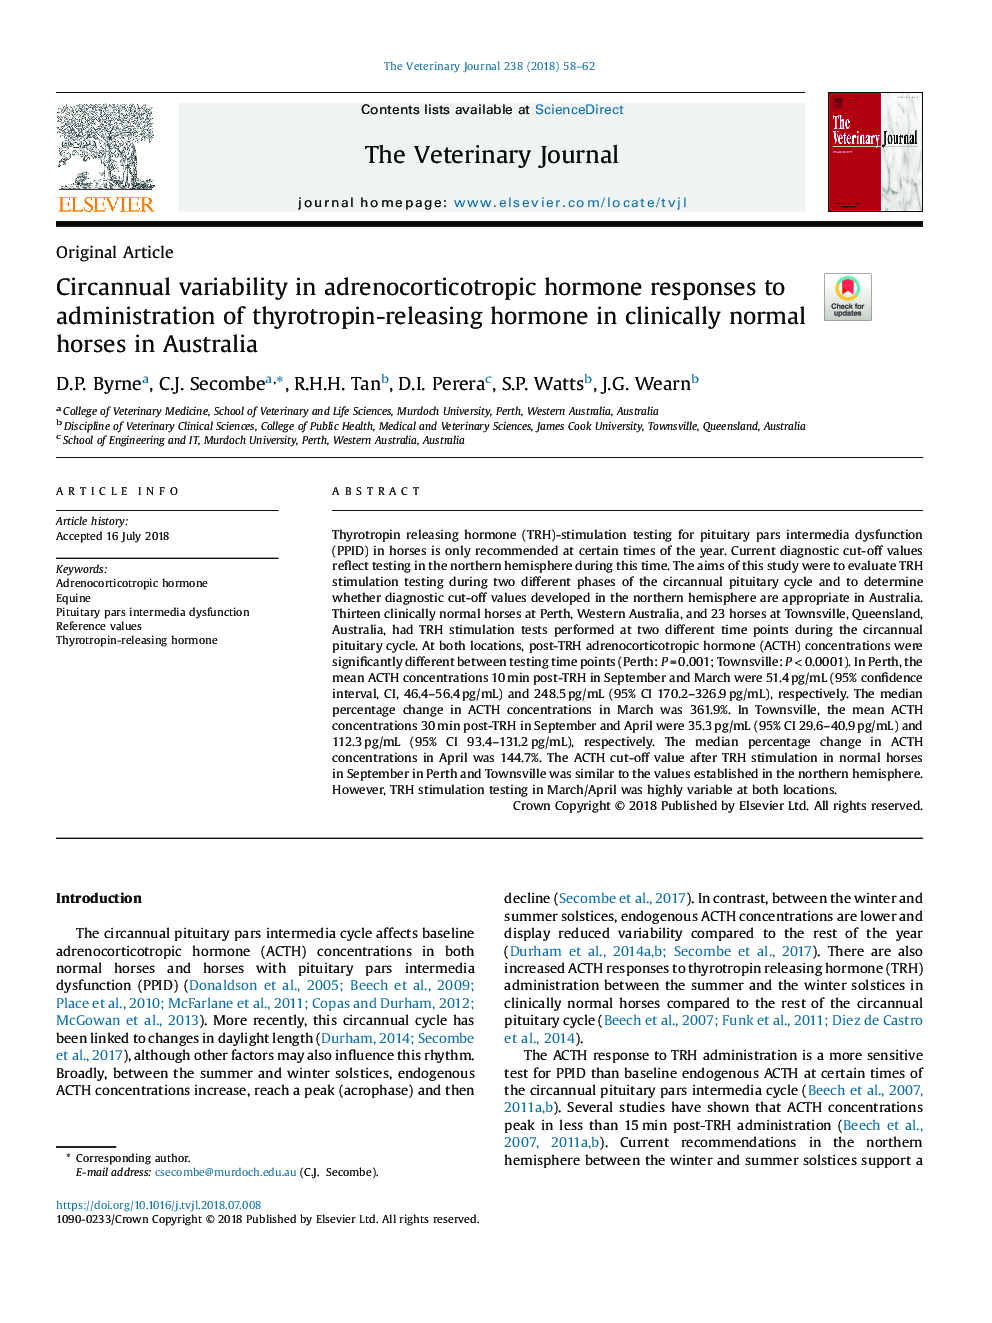 تنوع طوالنی در پاسخ هورمون های آدرنوکورتیکوتروپیک به مصرف هورمون آزاد کننده تیروتروپین در اسب های بالینی طبیعی استرالیا 